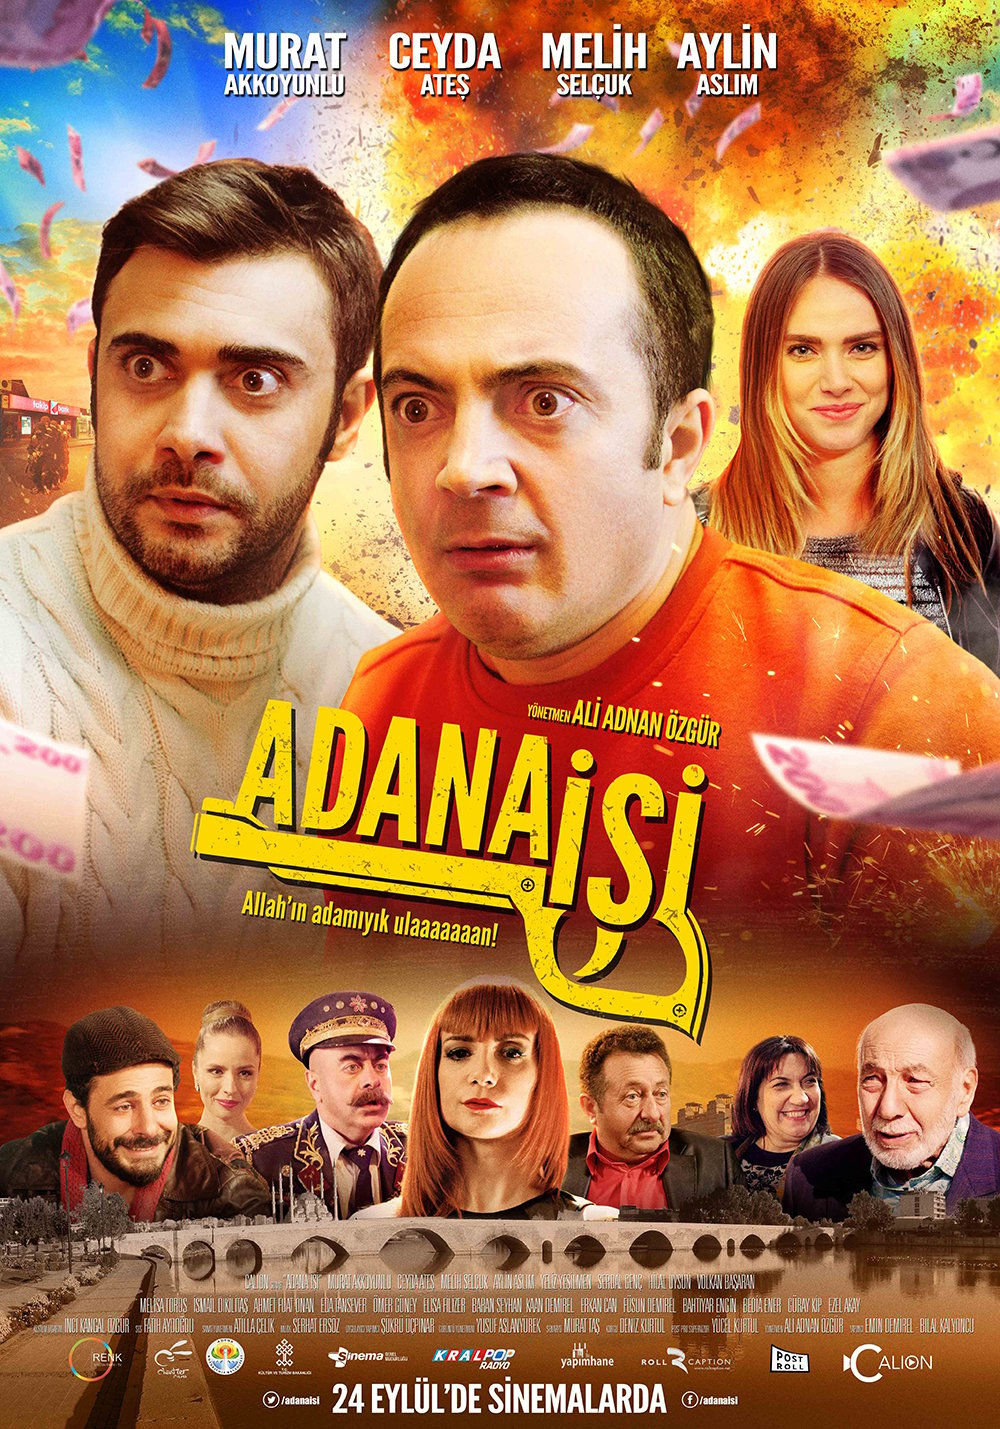 Adana İşi  film 2015  Beyazperde.com